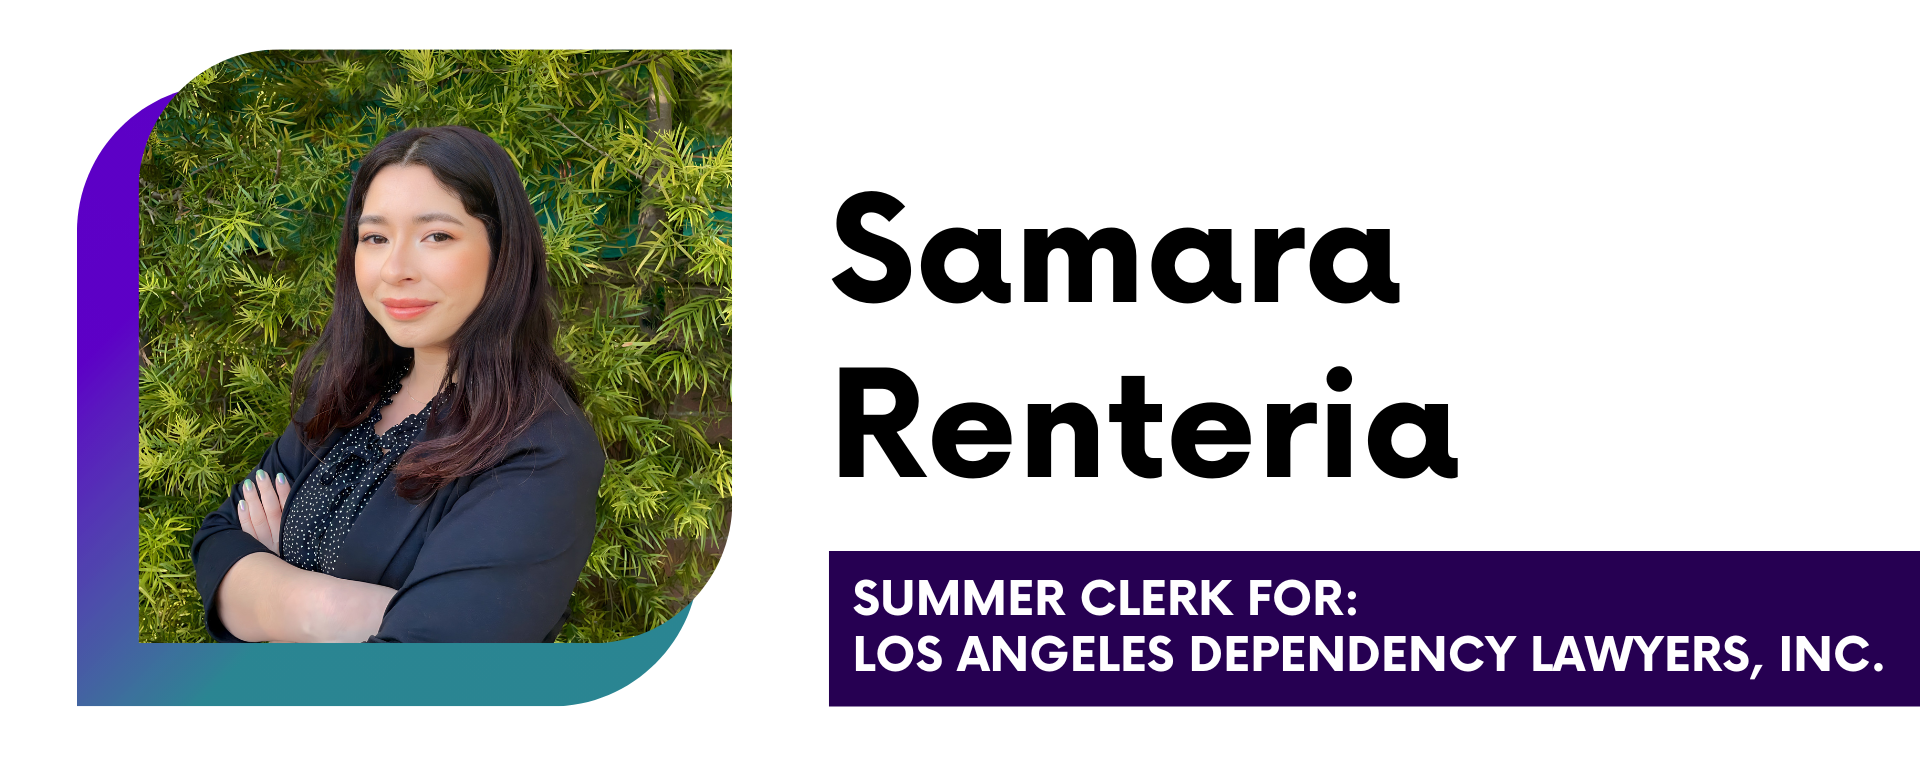 Samara Renteria Summer Clerk for Los Angeles Dependency Lawyer